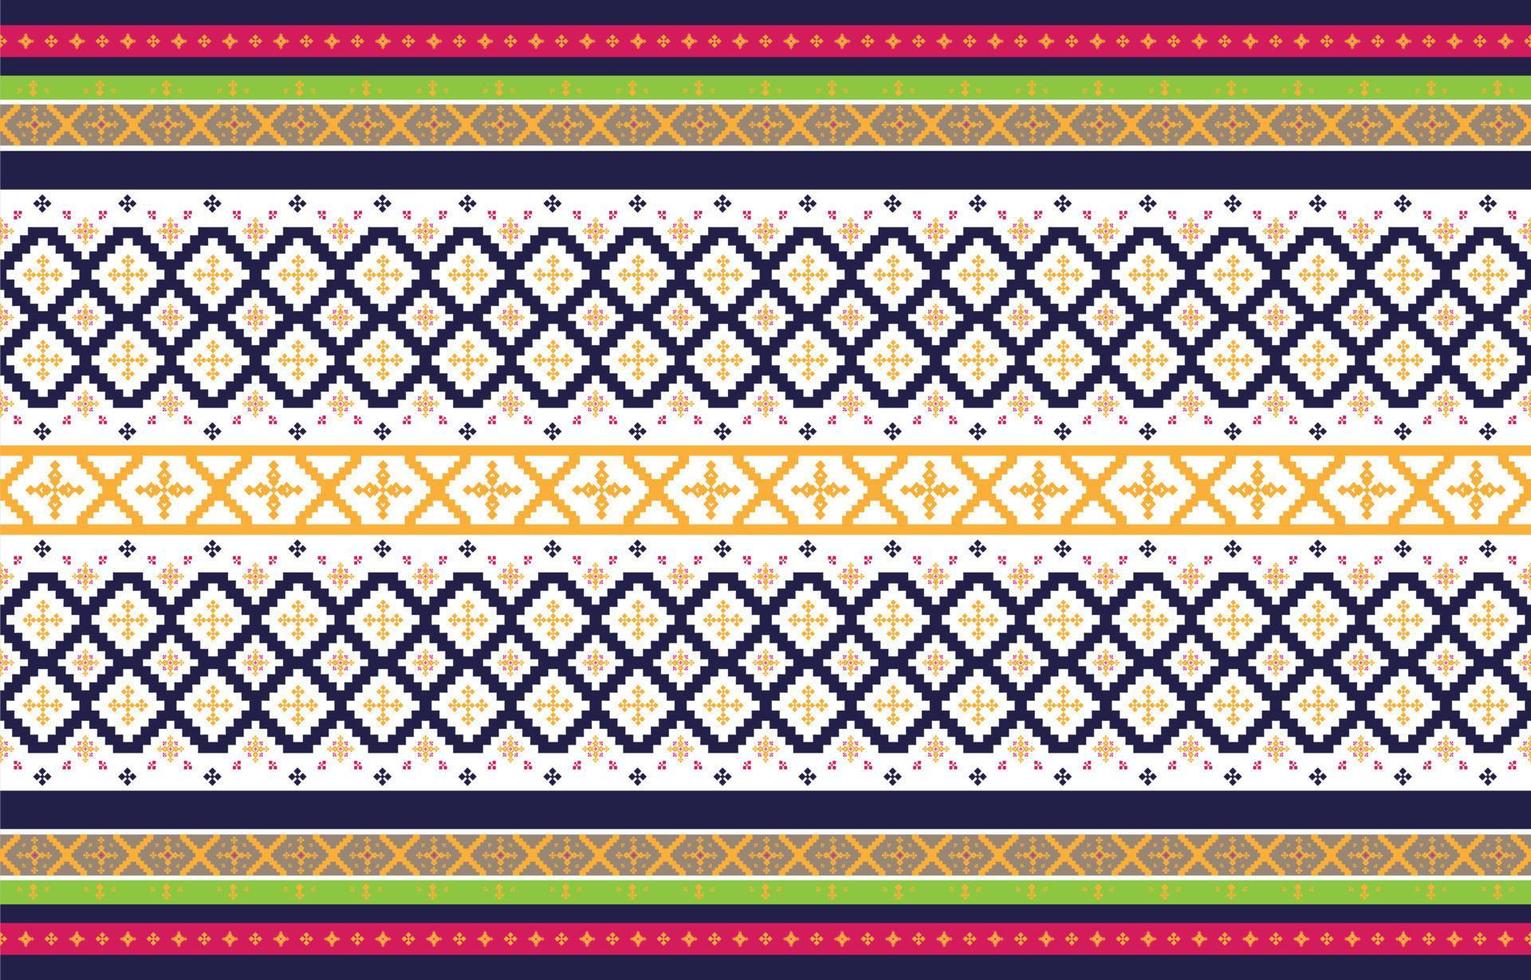 abstracte geometrische en tribale patronen, gebruiksontwerp lokale stofpatronen, ontwerp geïnspireerd door inheemse stammen. geometrische vectorillustratie vector